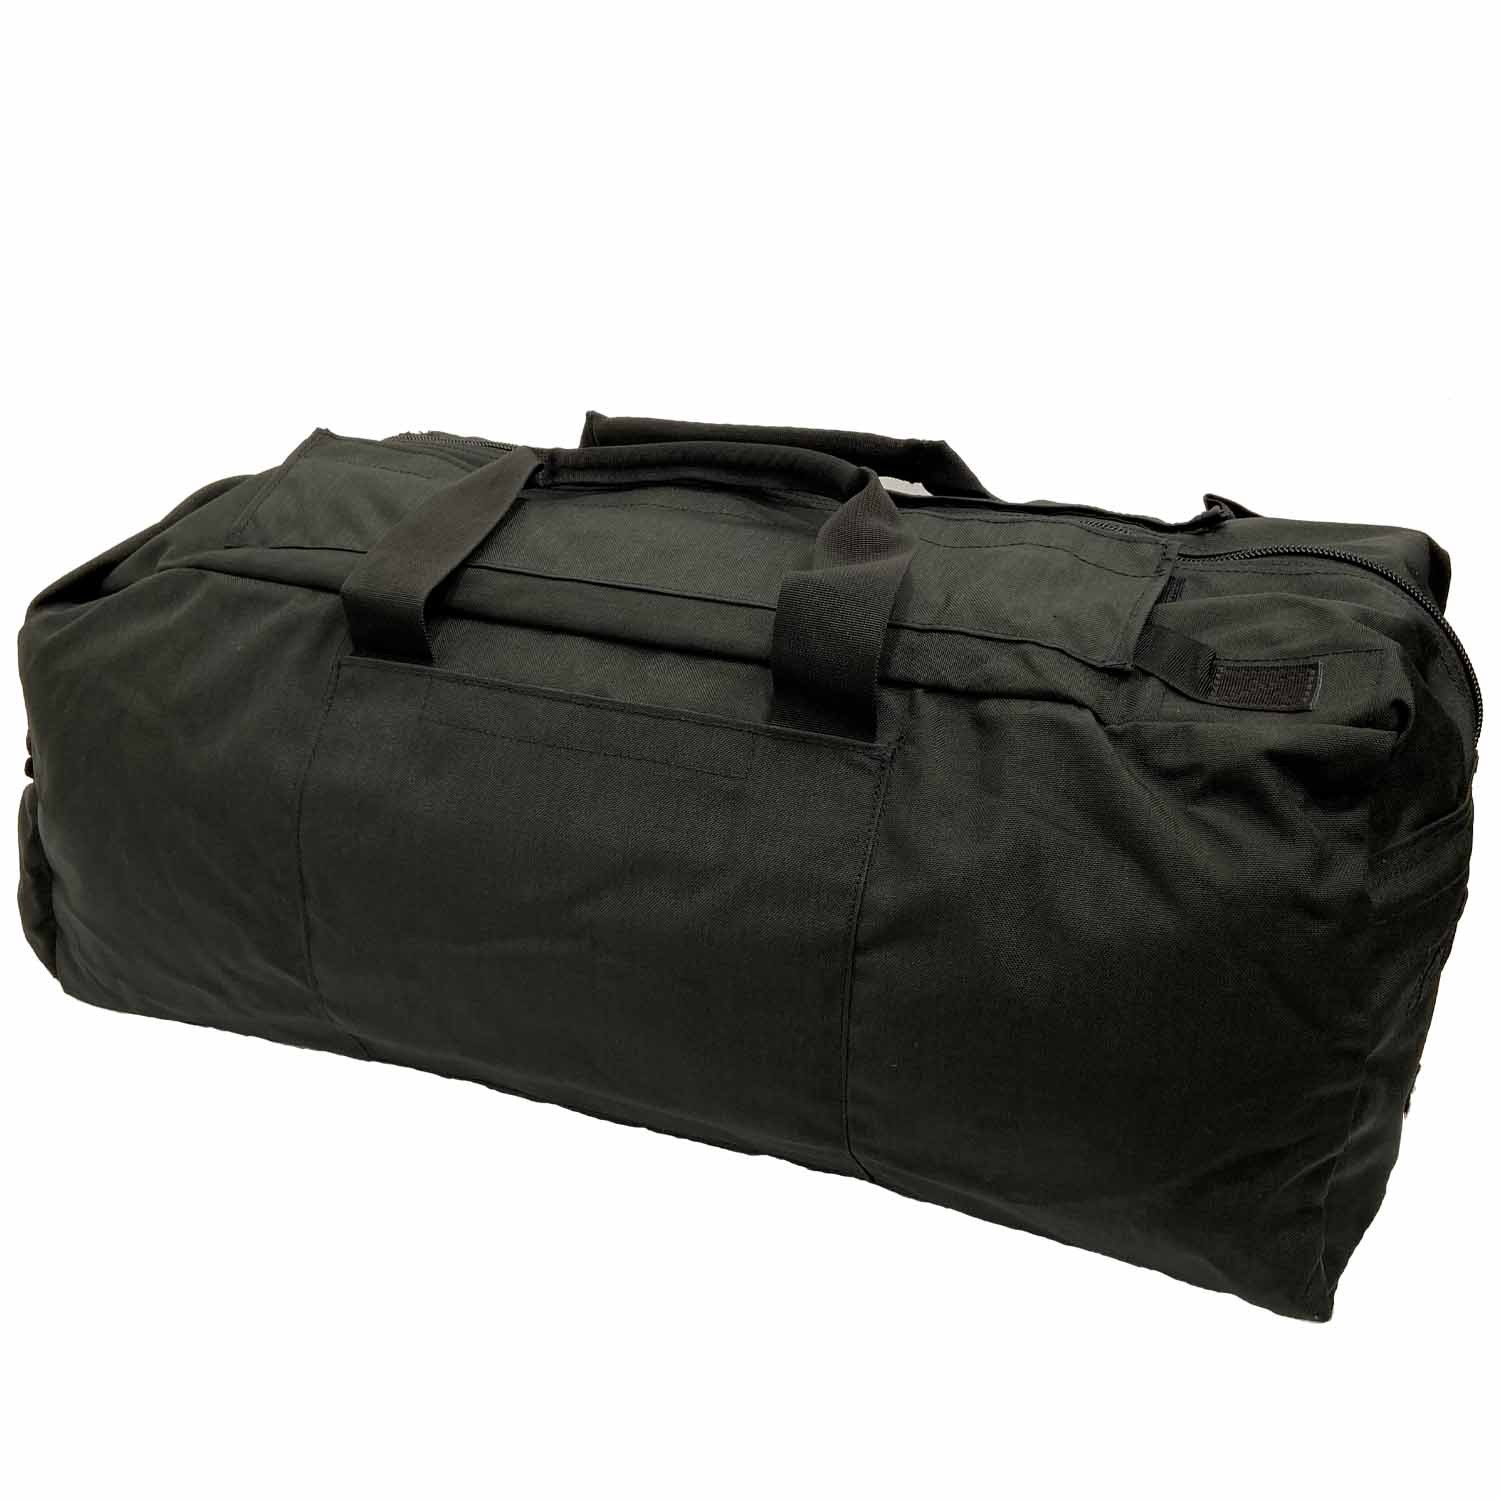 Standard Travel Bag - Black